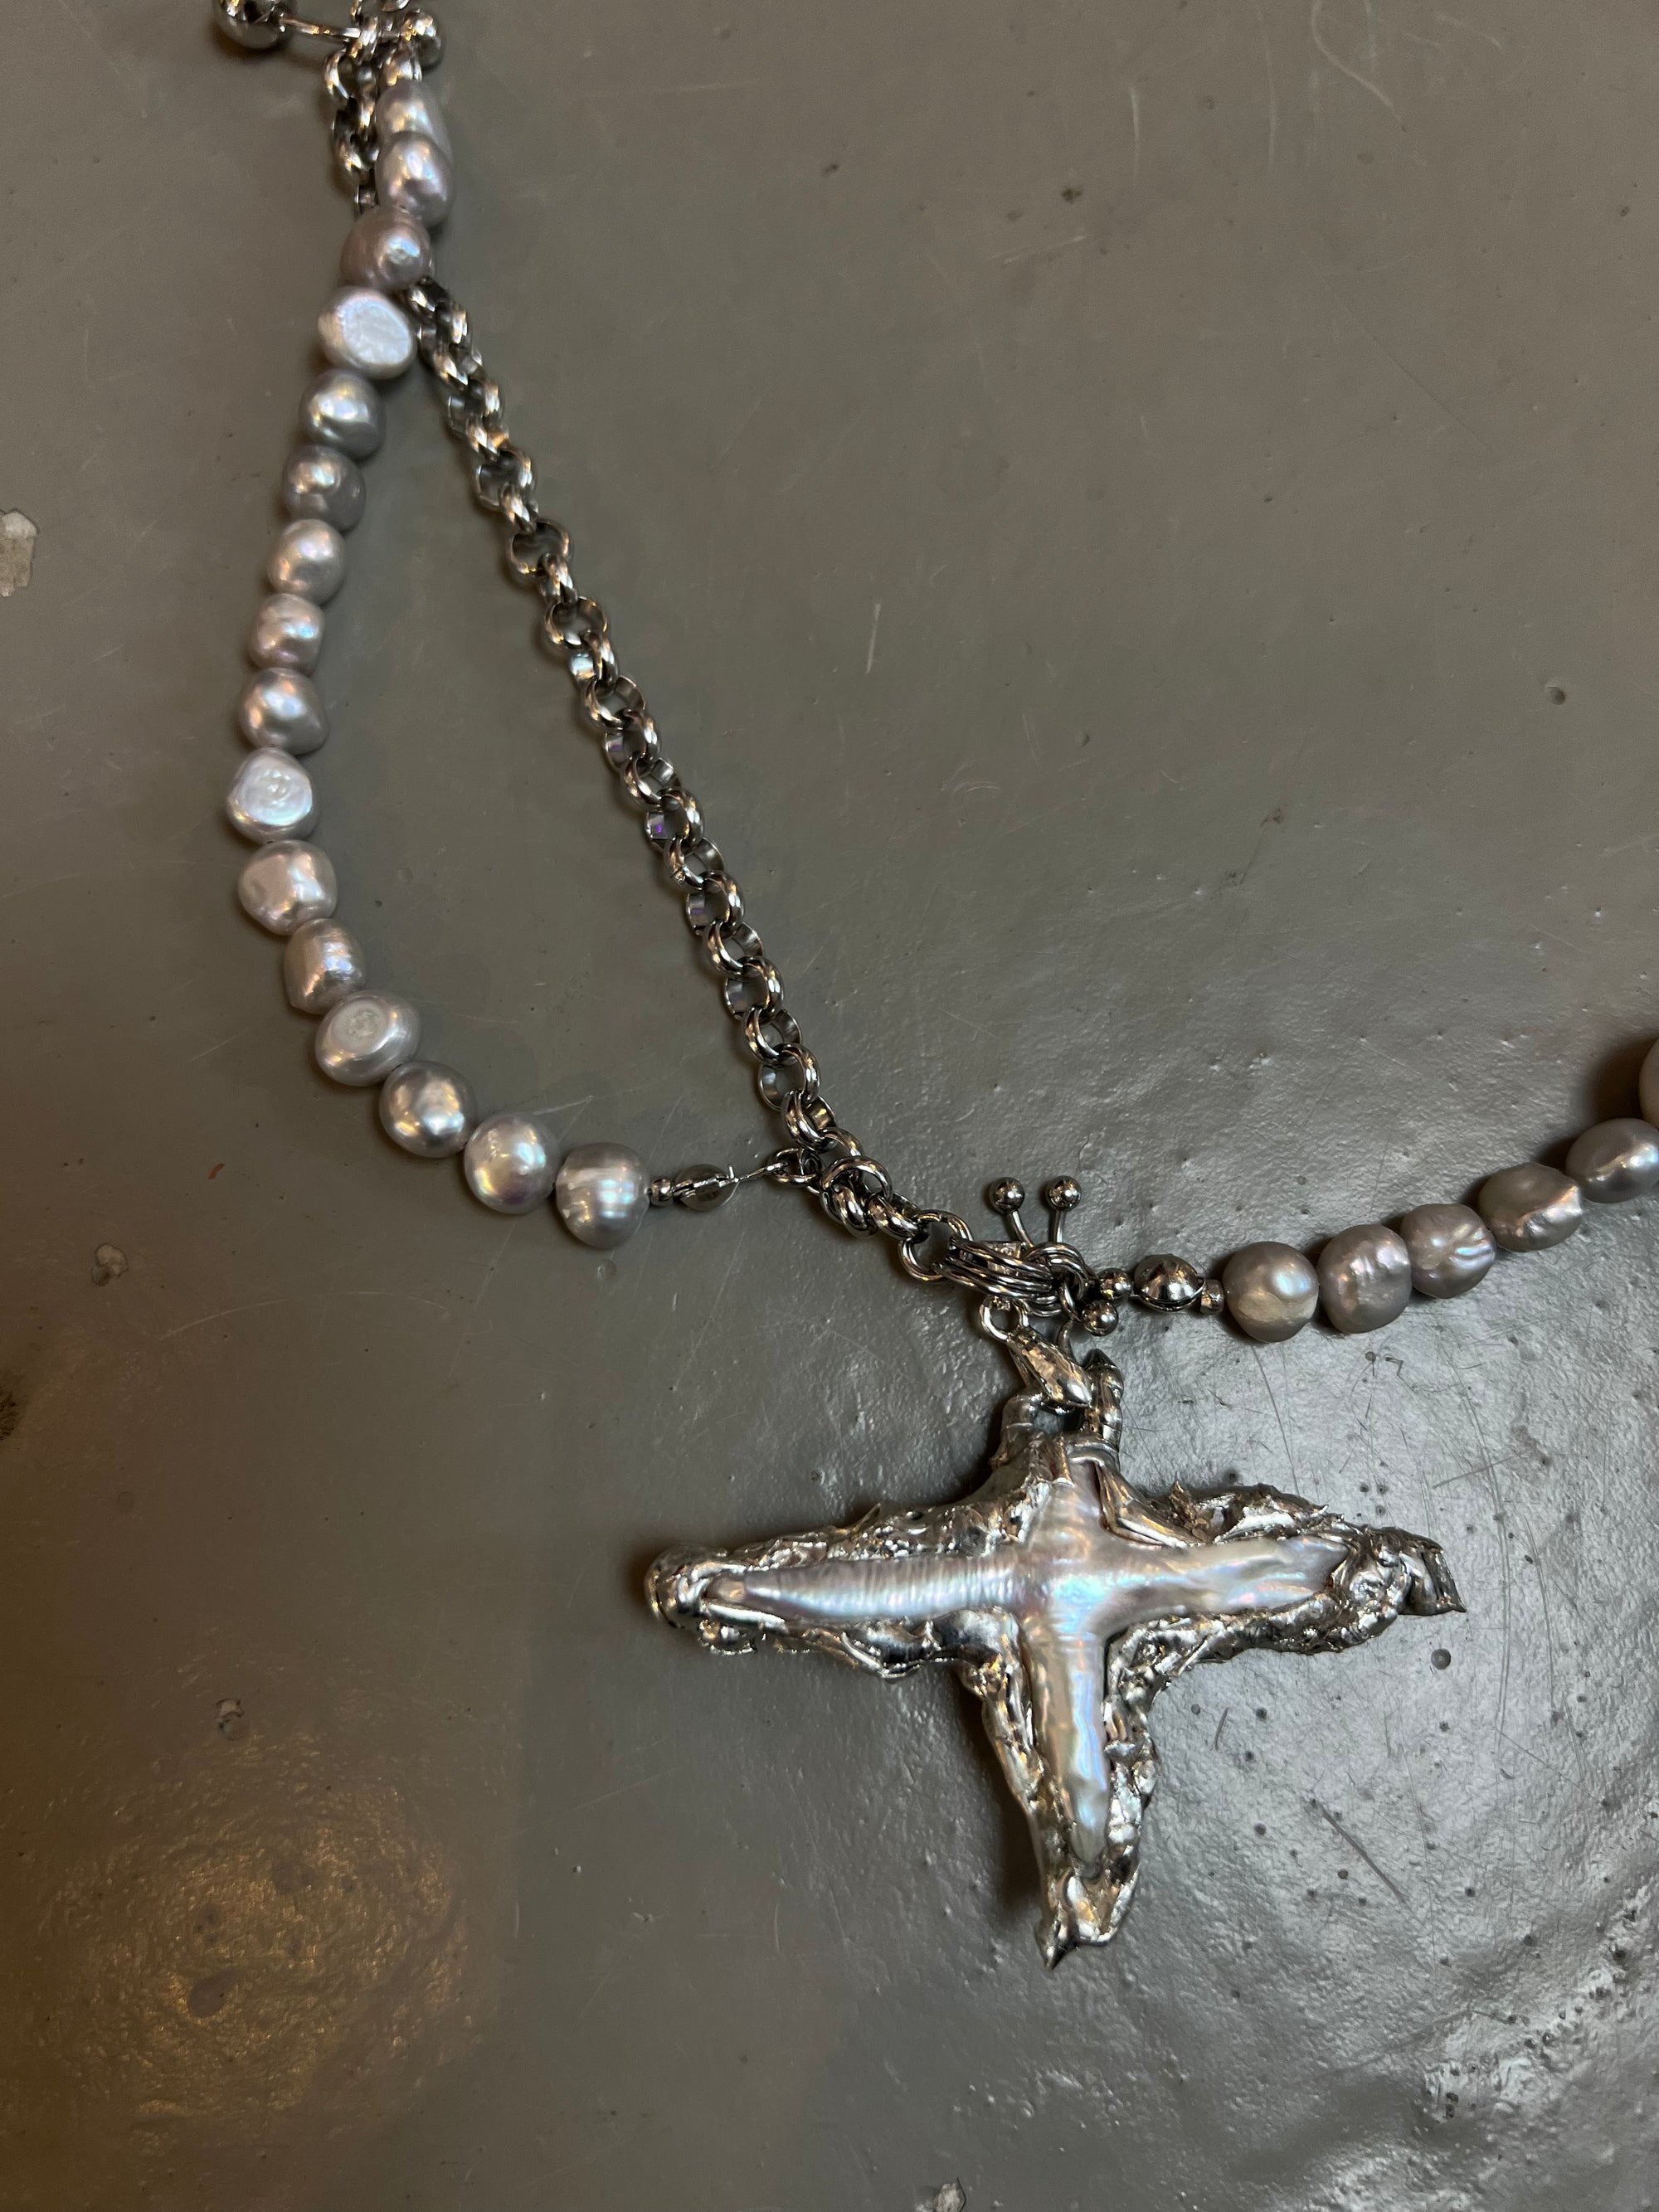 Produktbild von Xullery Cross Grey Pearl Necklace auf grauem Boden.